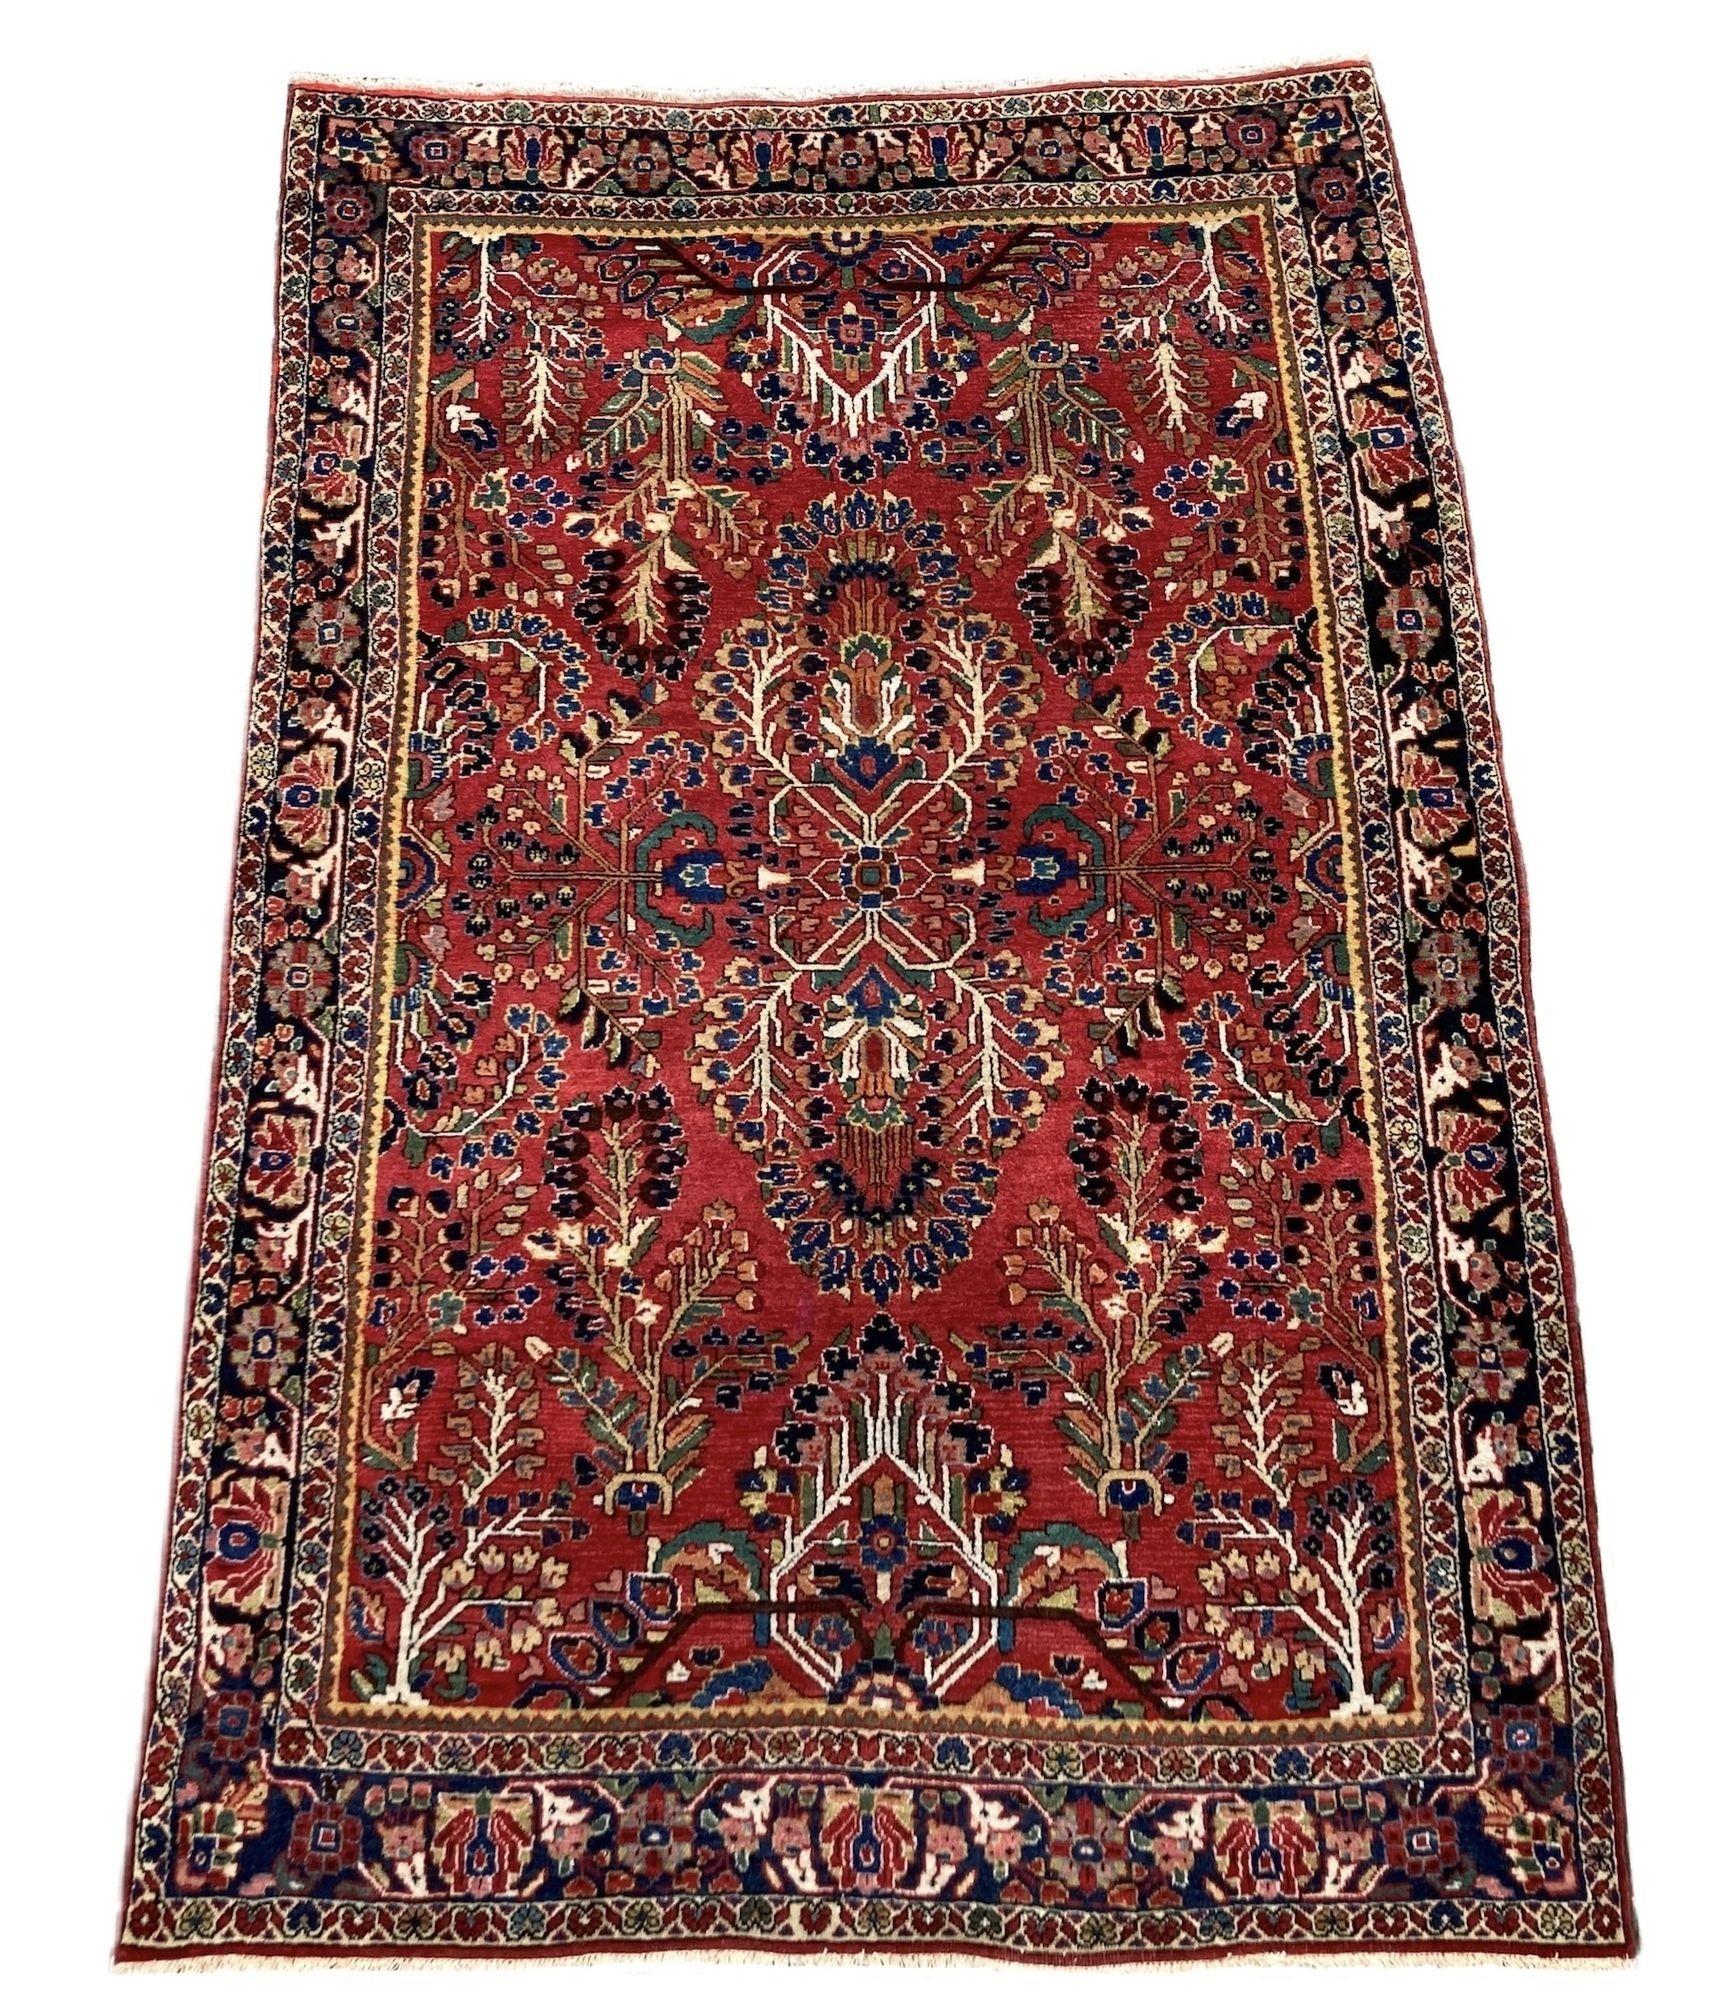 Ein fabelhafter antiker Sarouk-Teppich, handgewebt um 1900. Das Design zeigt ein florales Allover-Muster auf einem sattroten Feld und einem tiefen indigoblauen Rand. Fein gewebt mit tollen Sekundärfarben in Rosa, Grün und Blau.
Größe: 1.58m x 1.06m